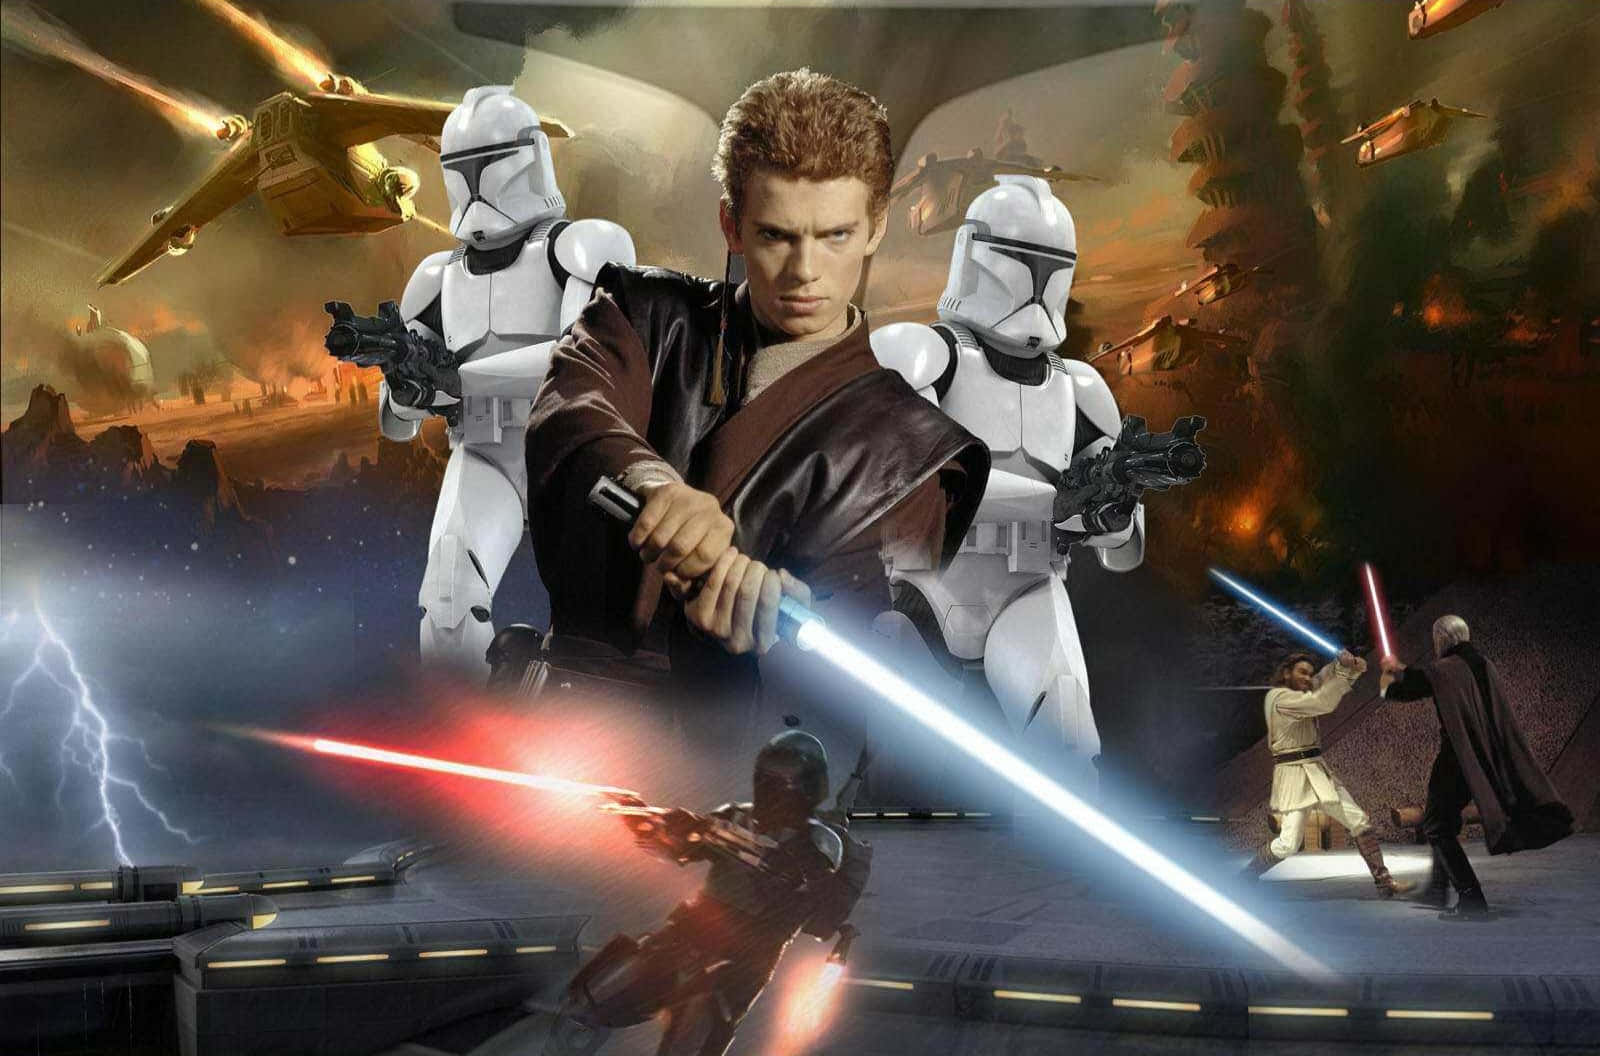 Imagende Collage De La Trilogía De Star Wars Prequel